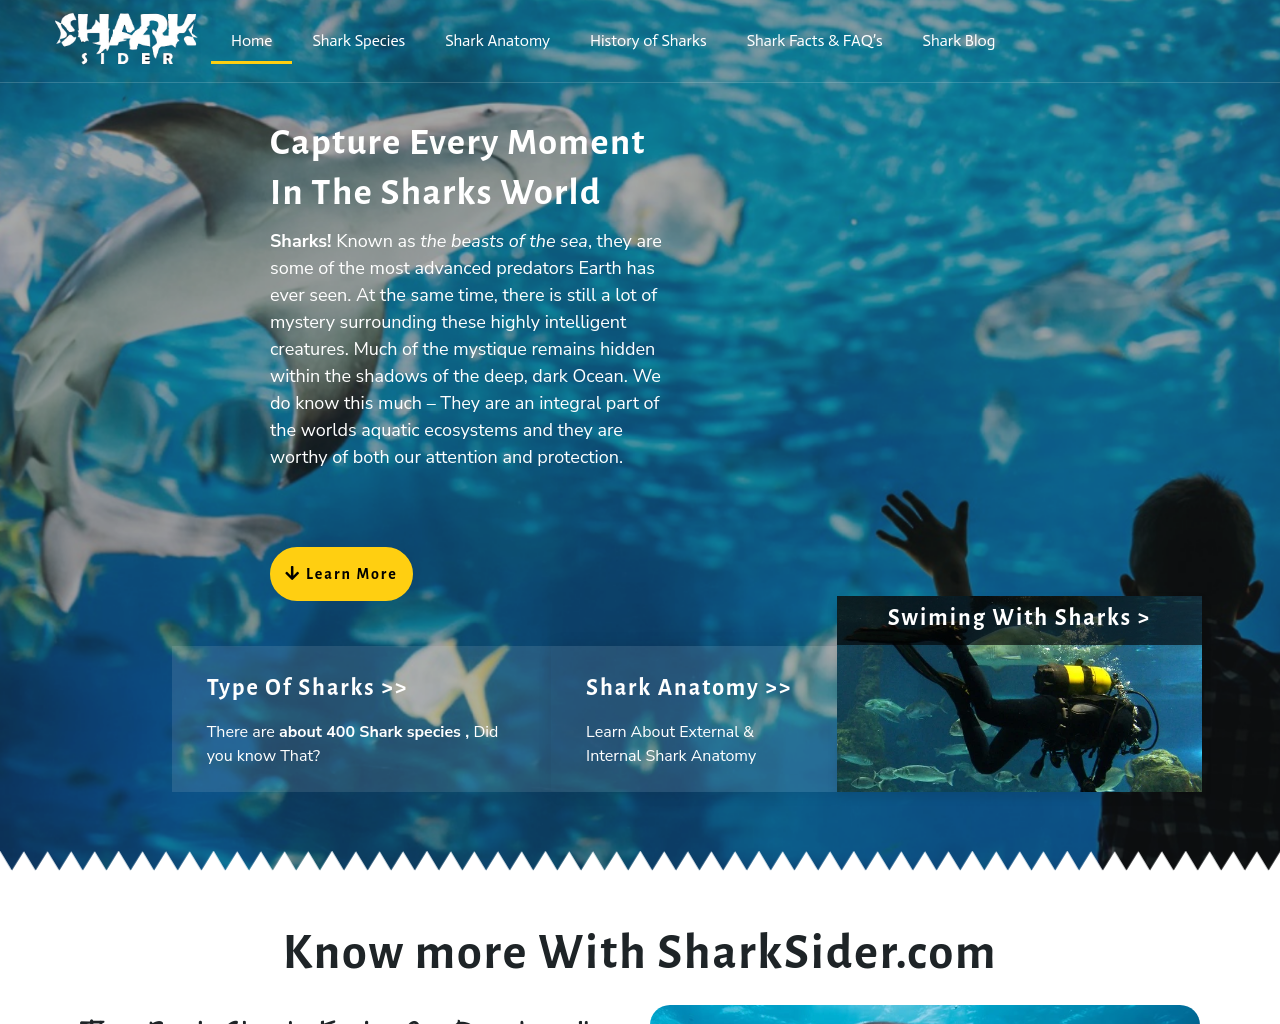 sharksider.com